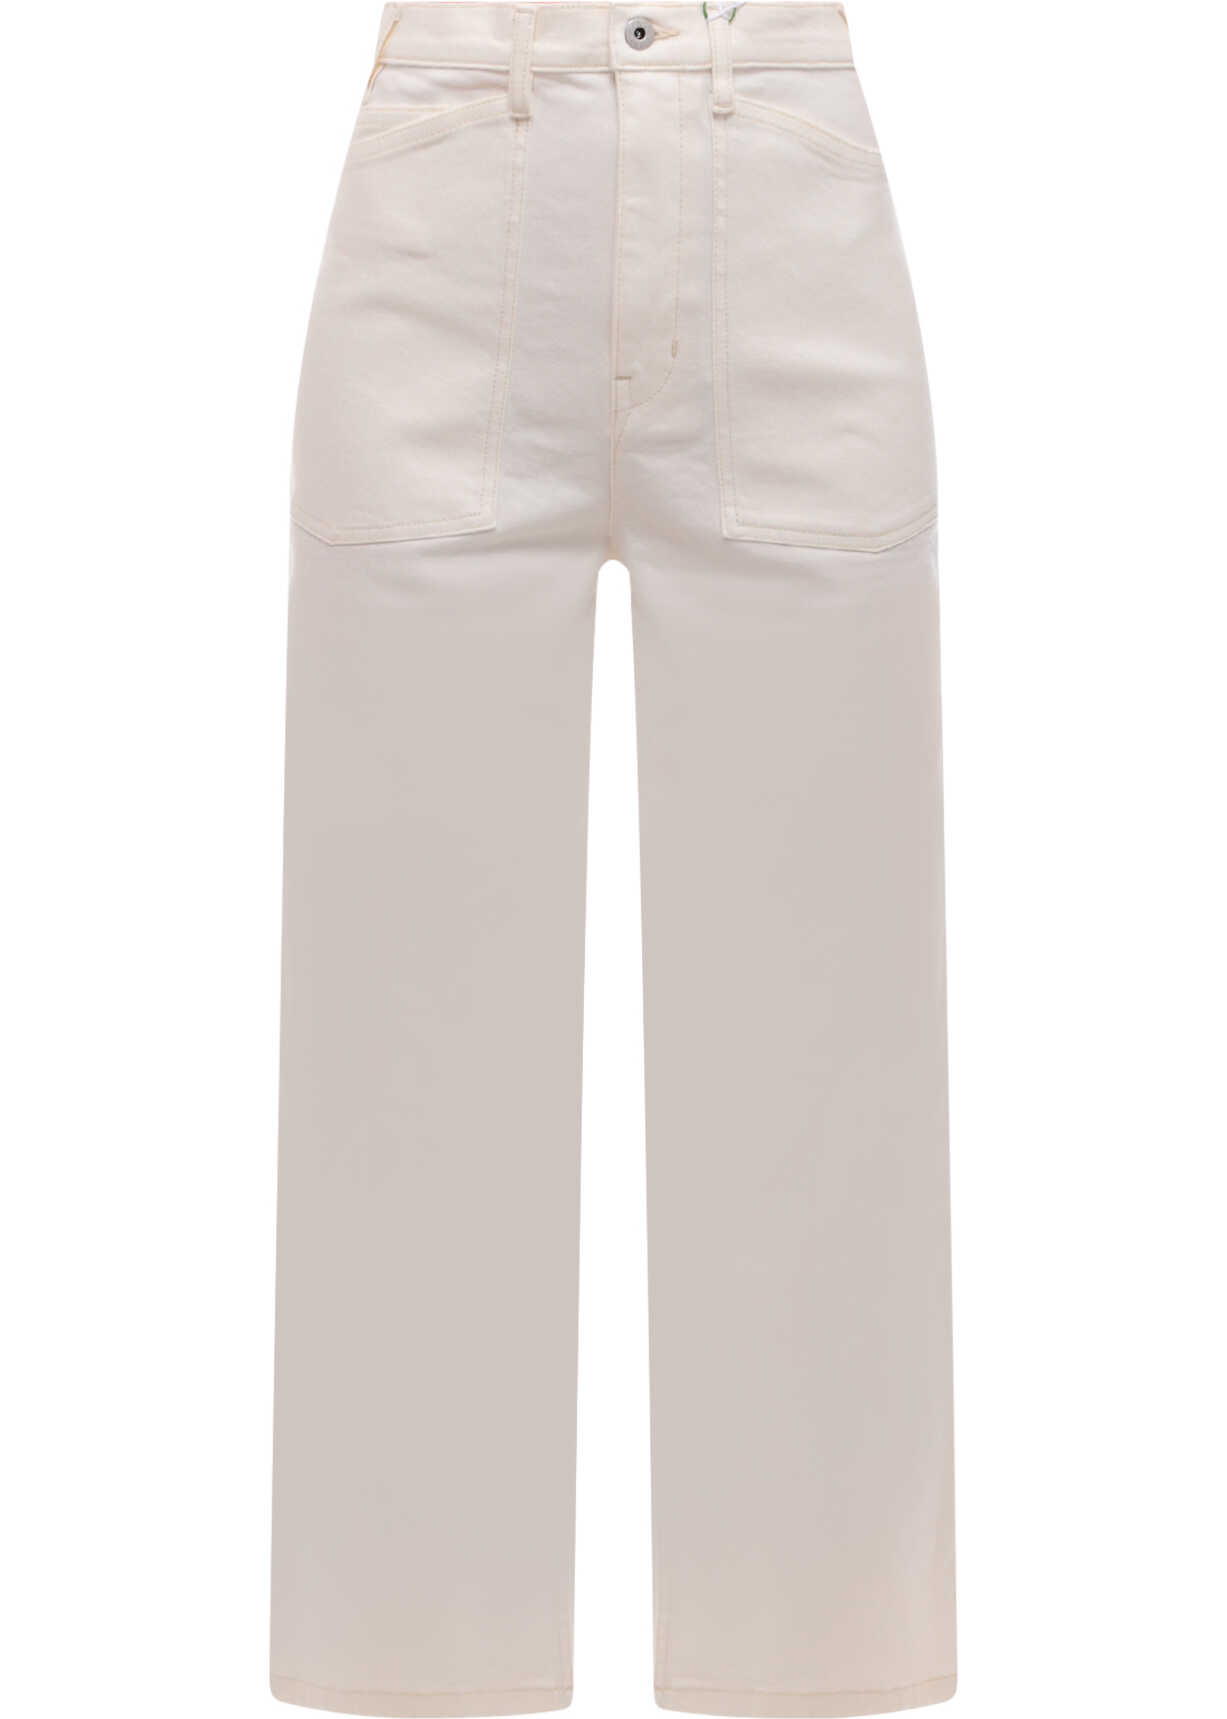 KENZO PARIS Jeans White